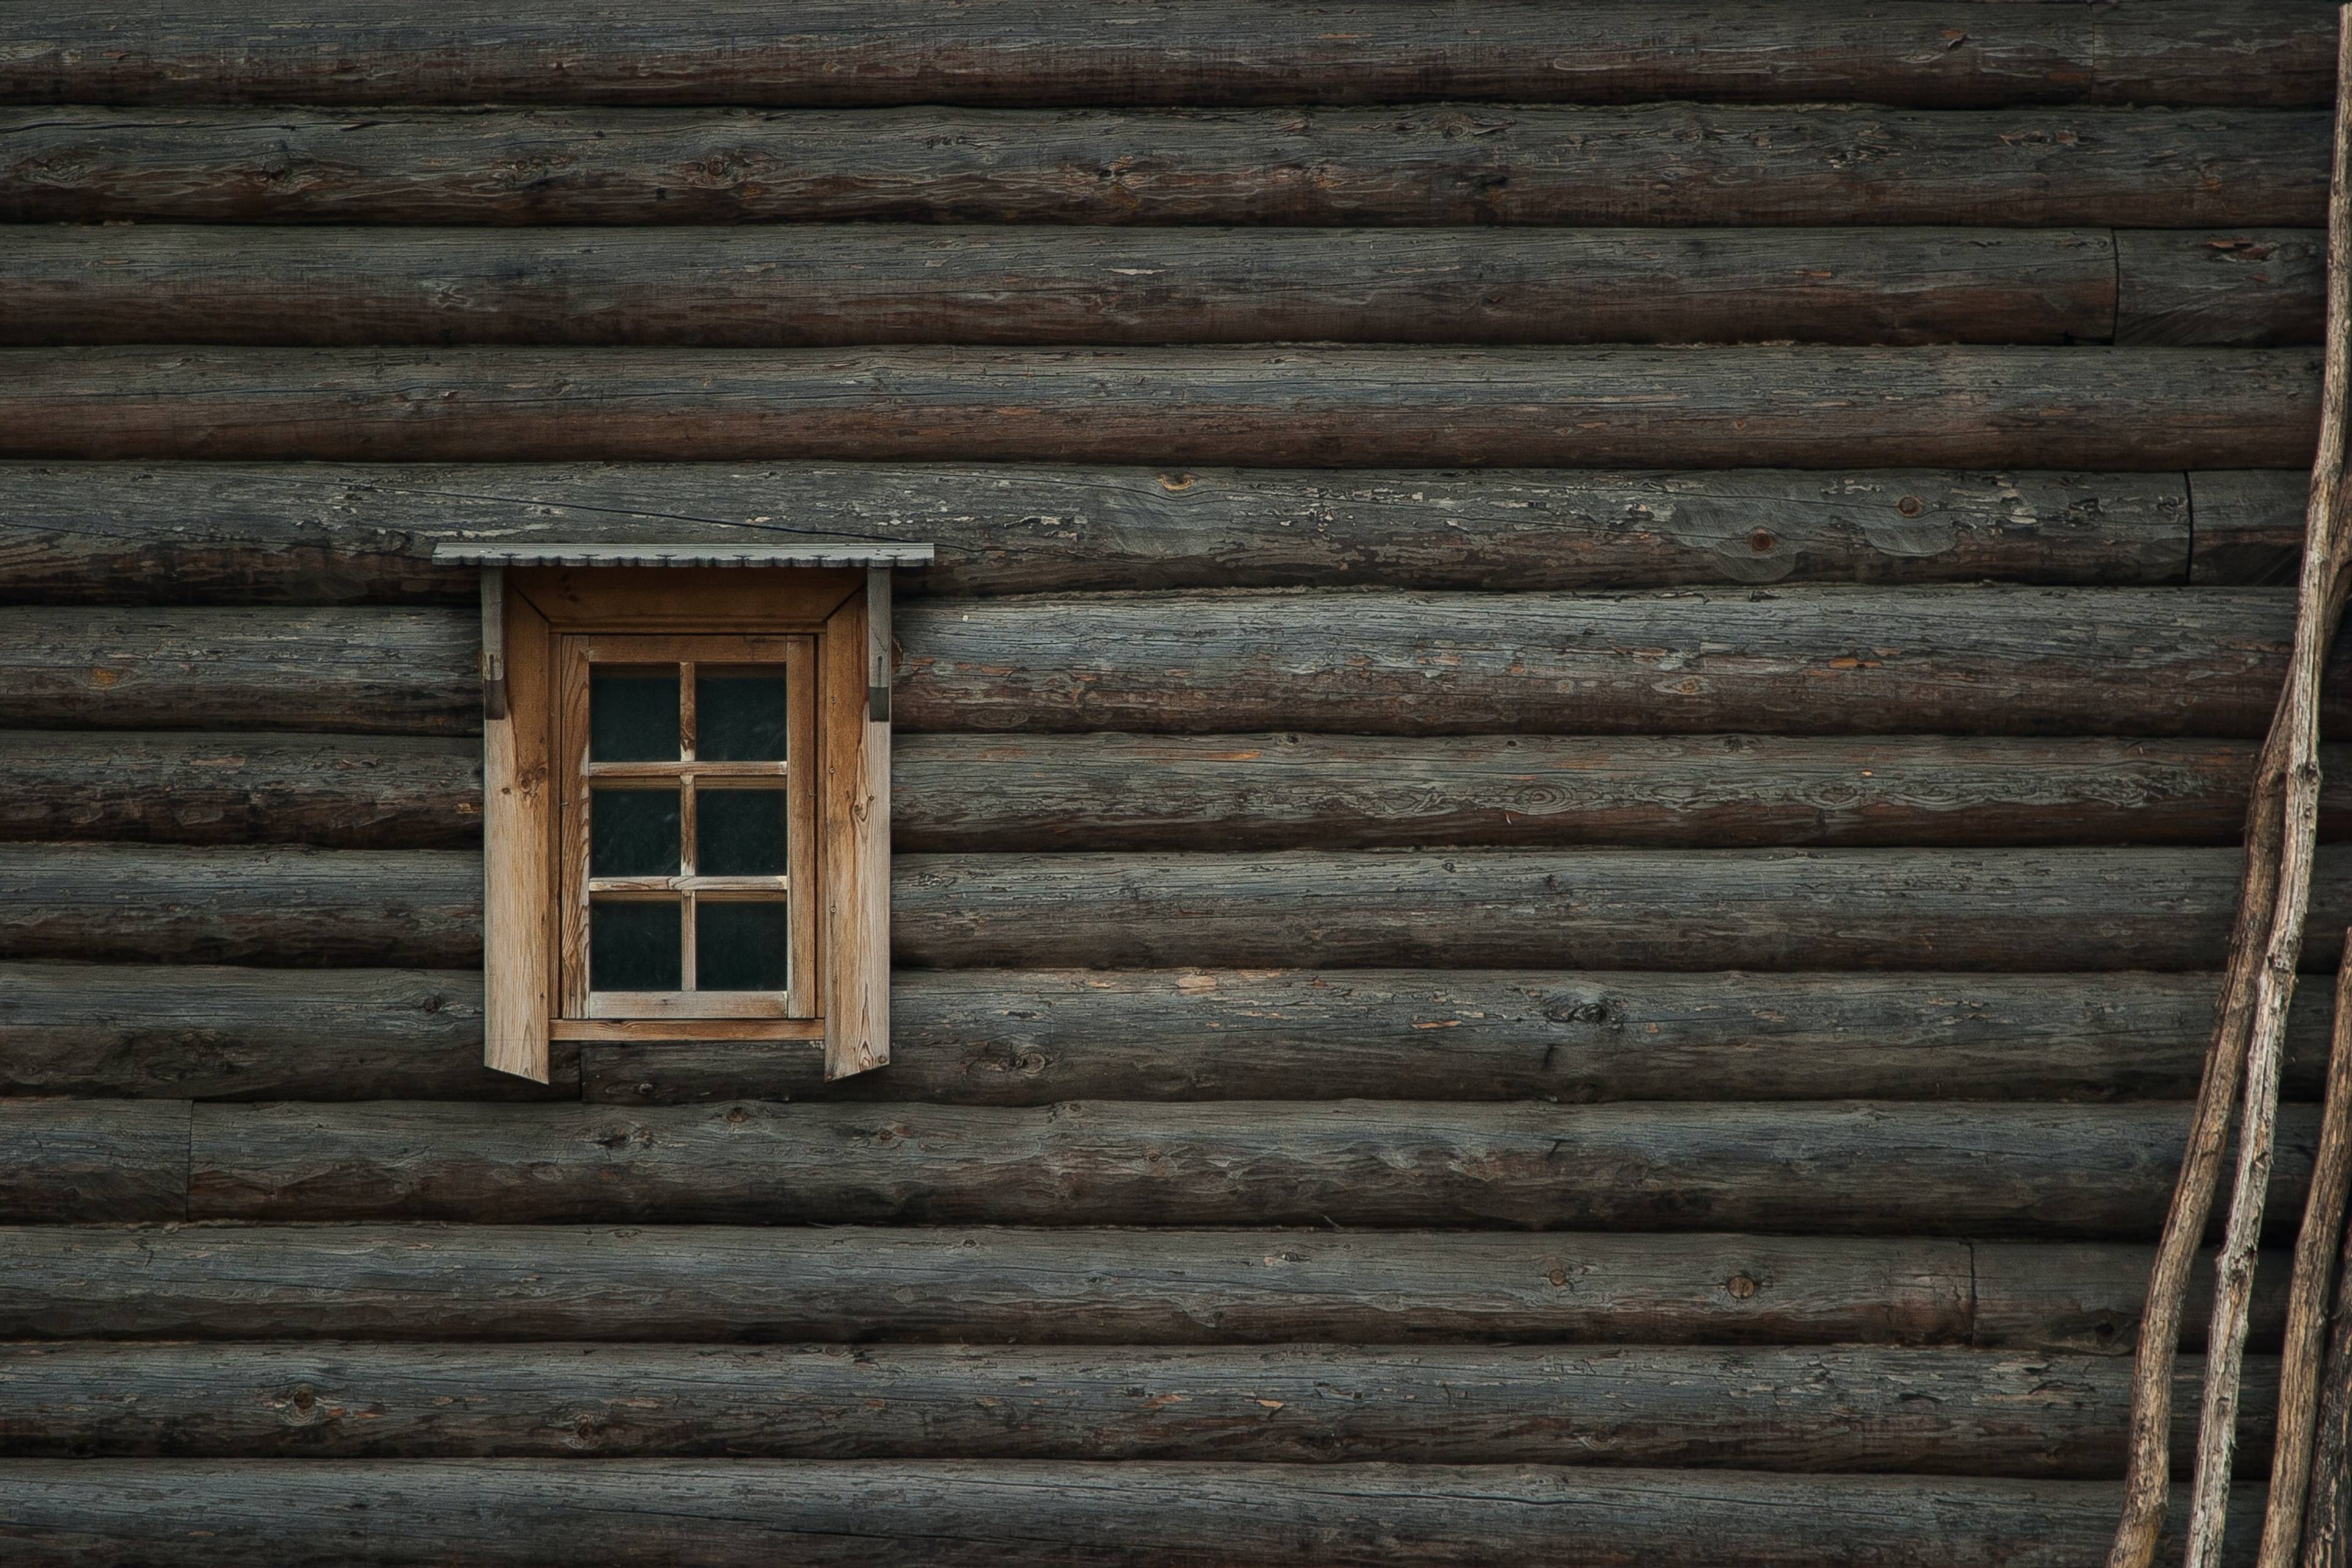 Russian hut